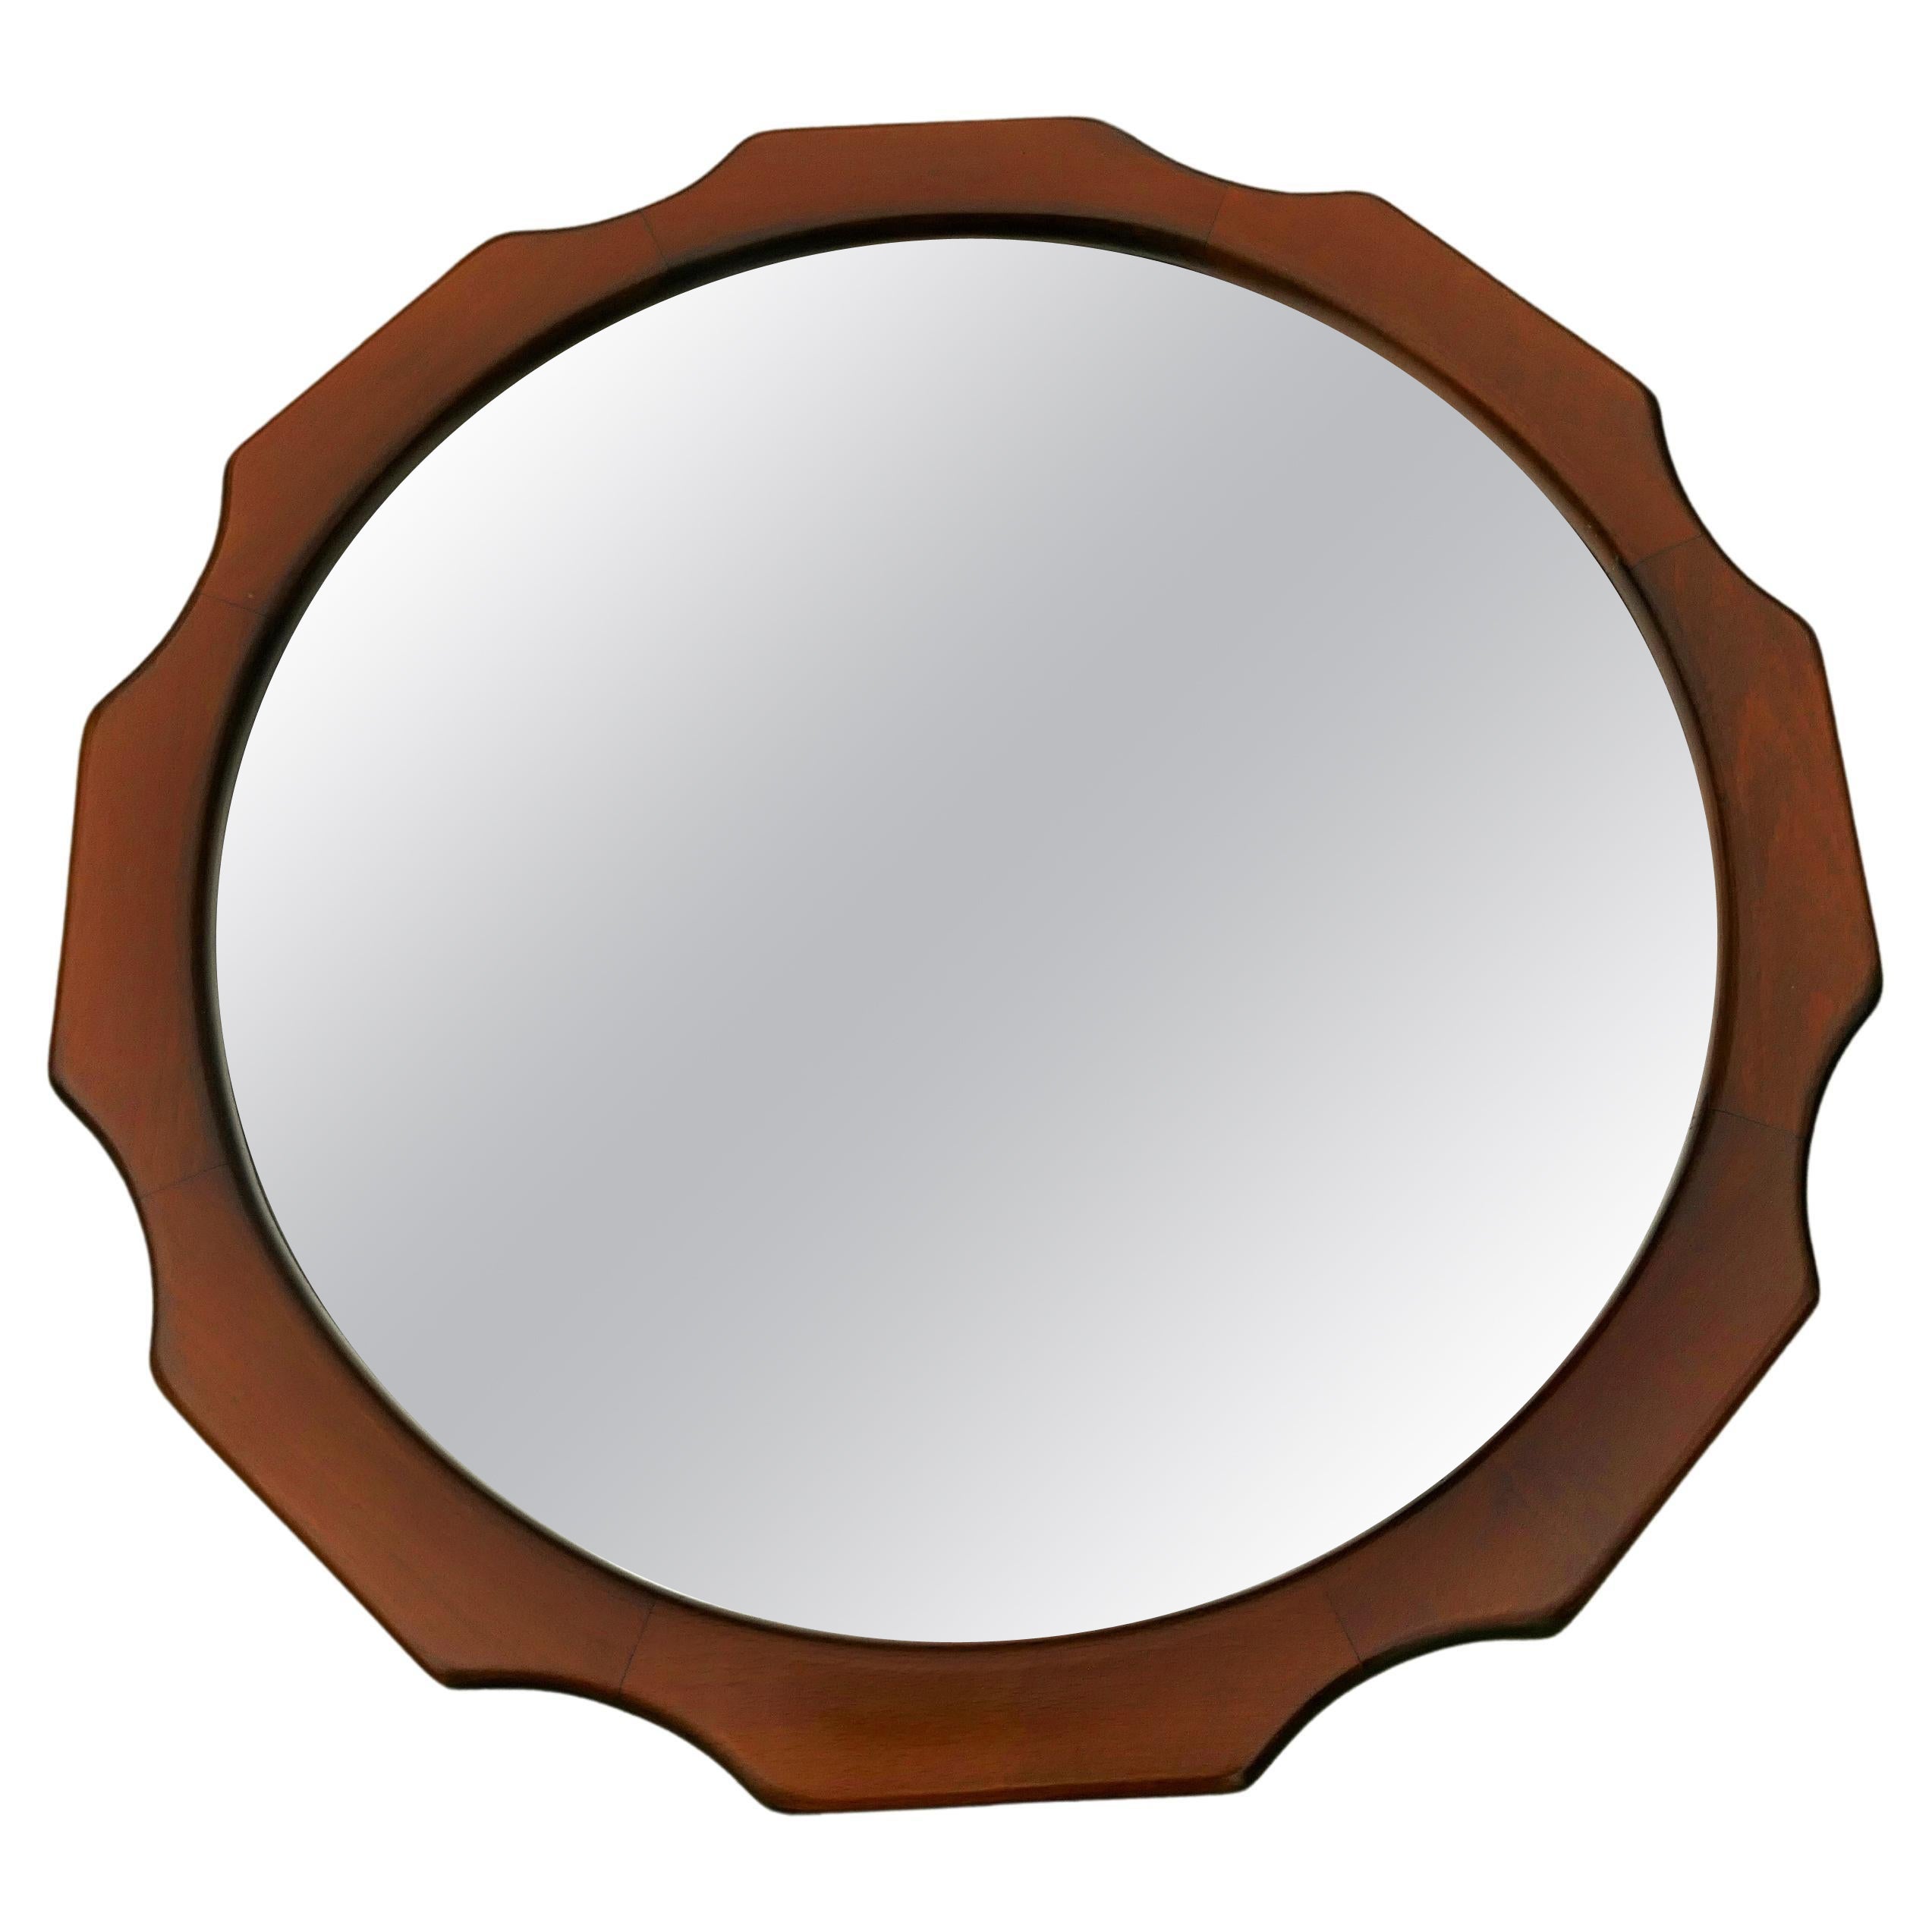 Miroir en bois fabriqué en Italie